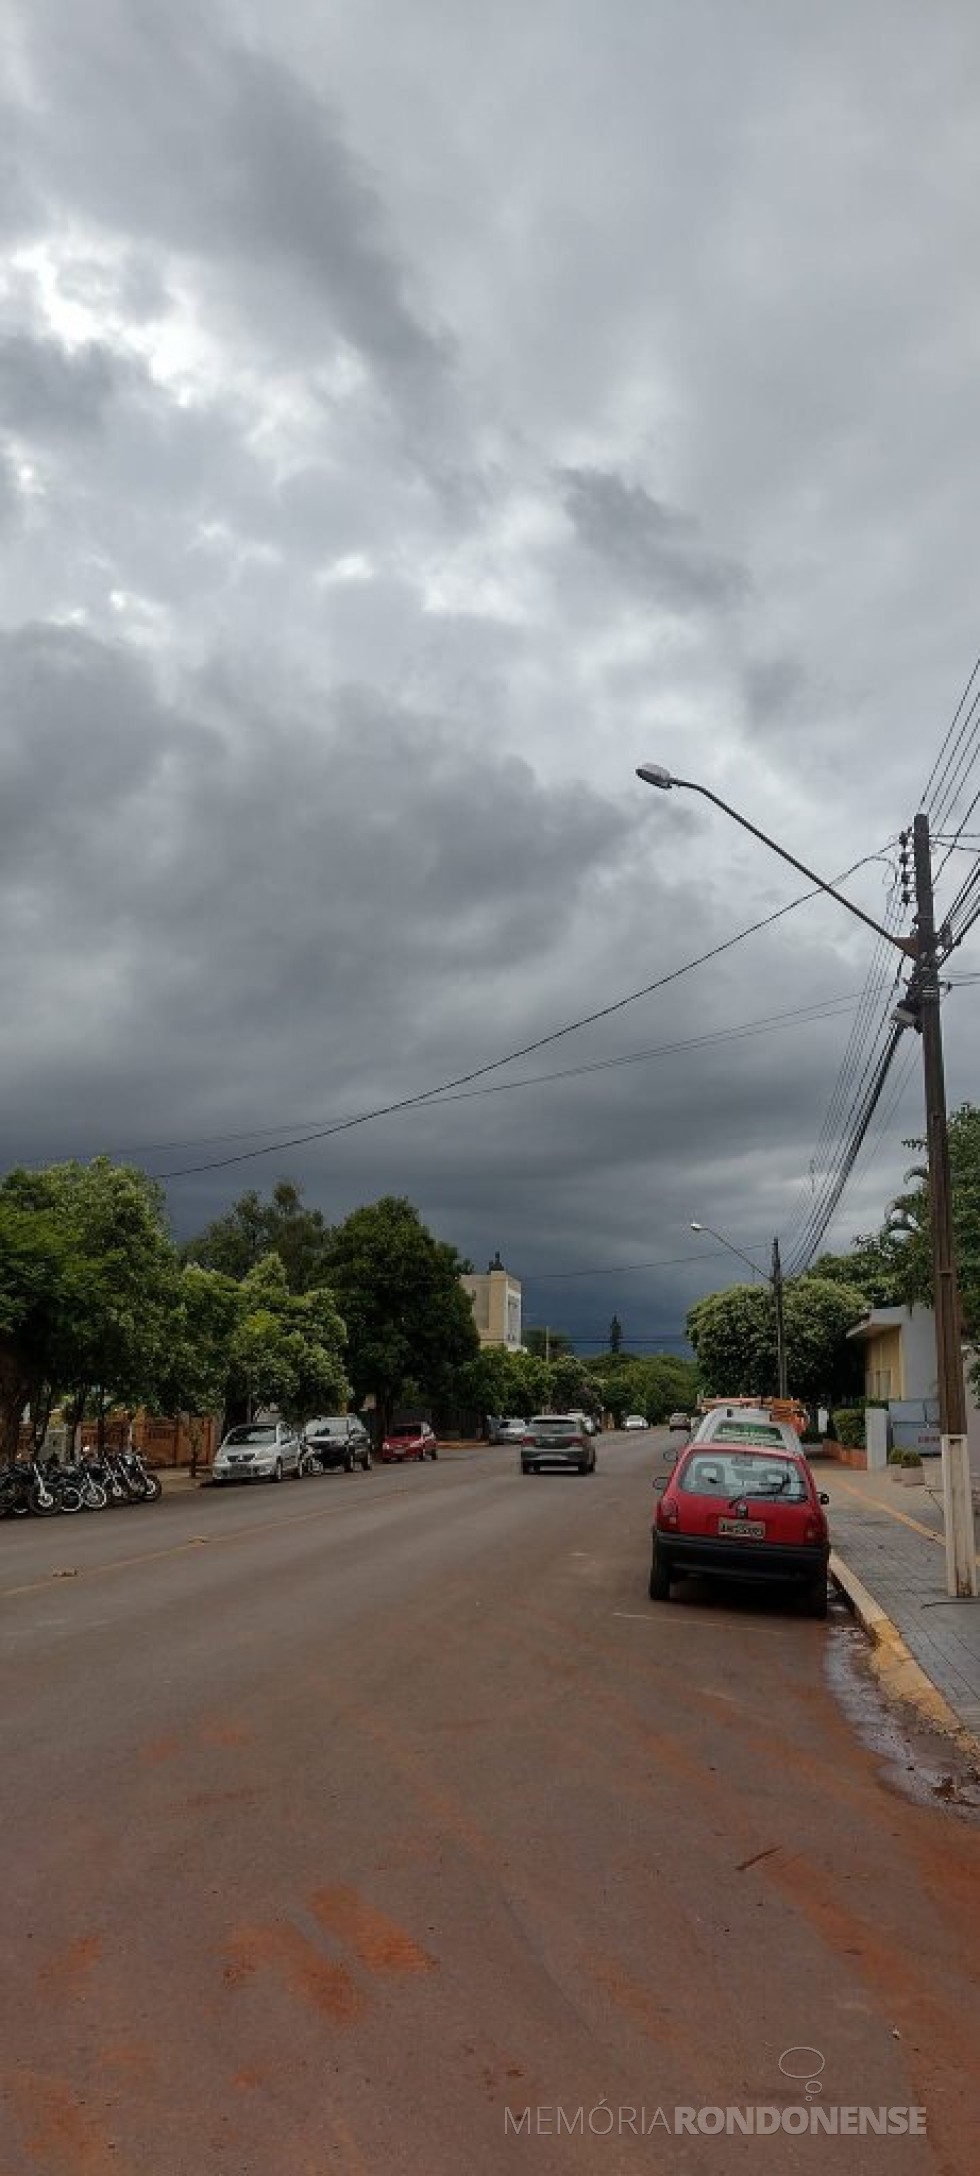 || Formação de nuvens de chuva se aproximando da cidade de Marechal Cândido Rondon, em 03 de fevereiro de 2023. Imagem clicada a partir da rua Minas Gerais, entre as Ruas Sete de Setembro e D. João VI pelo rondonense Ander Santos - FOTO 14 - 